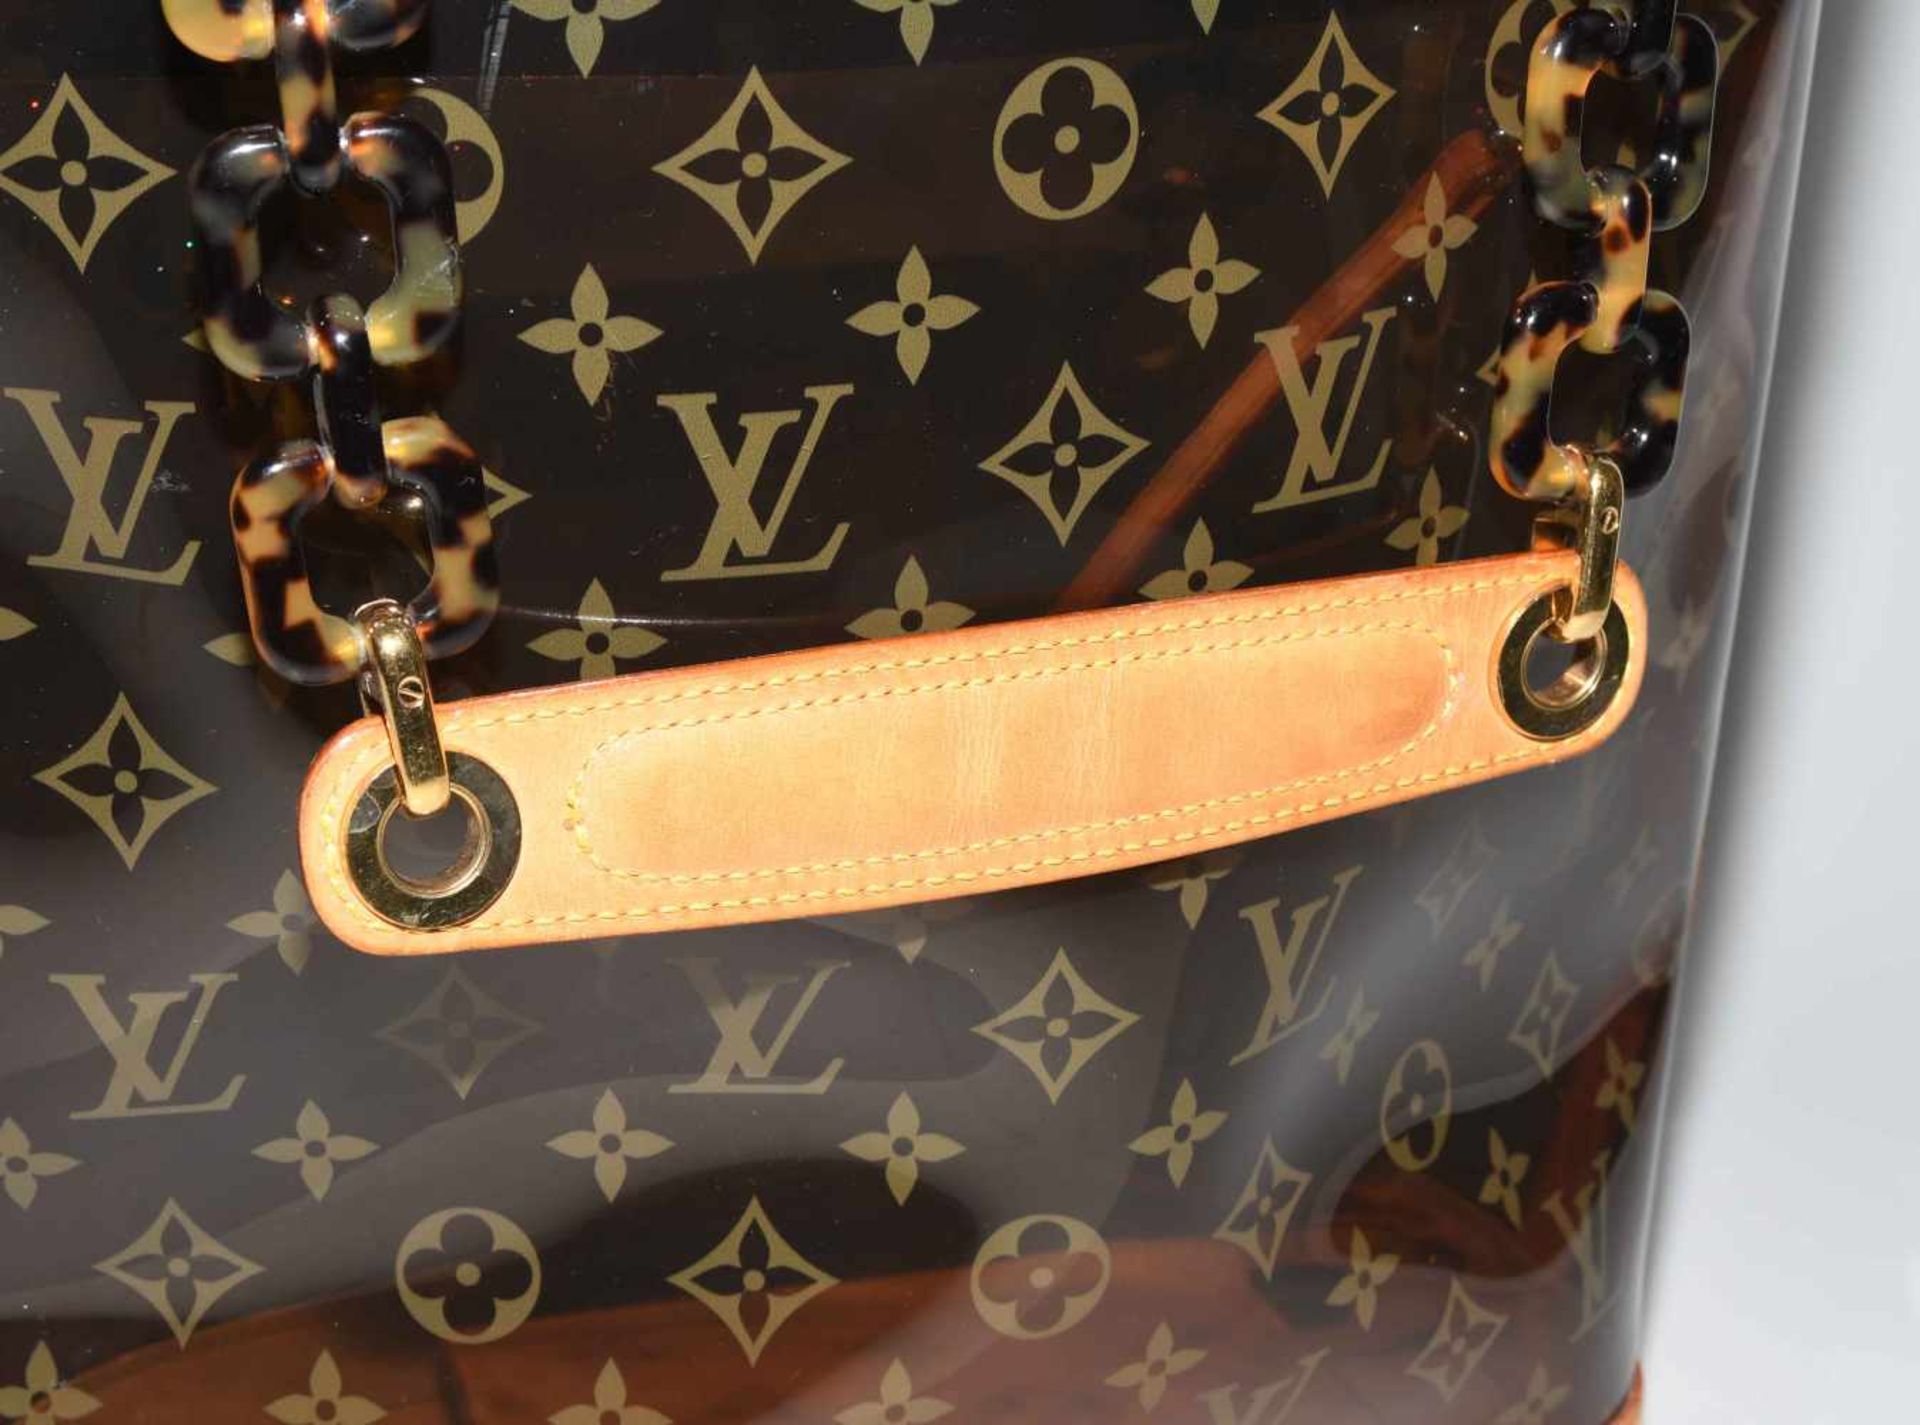 Louis Vuitton, "Ambre sac cabas"Schultertasche aus braunem Vinyl mit klassischem Monogram Muster. - Bild 13 aus 17